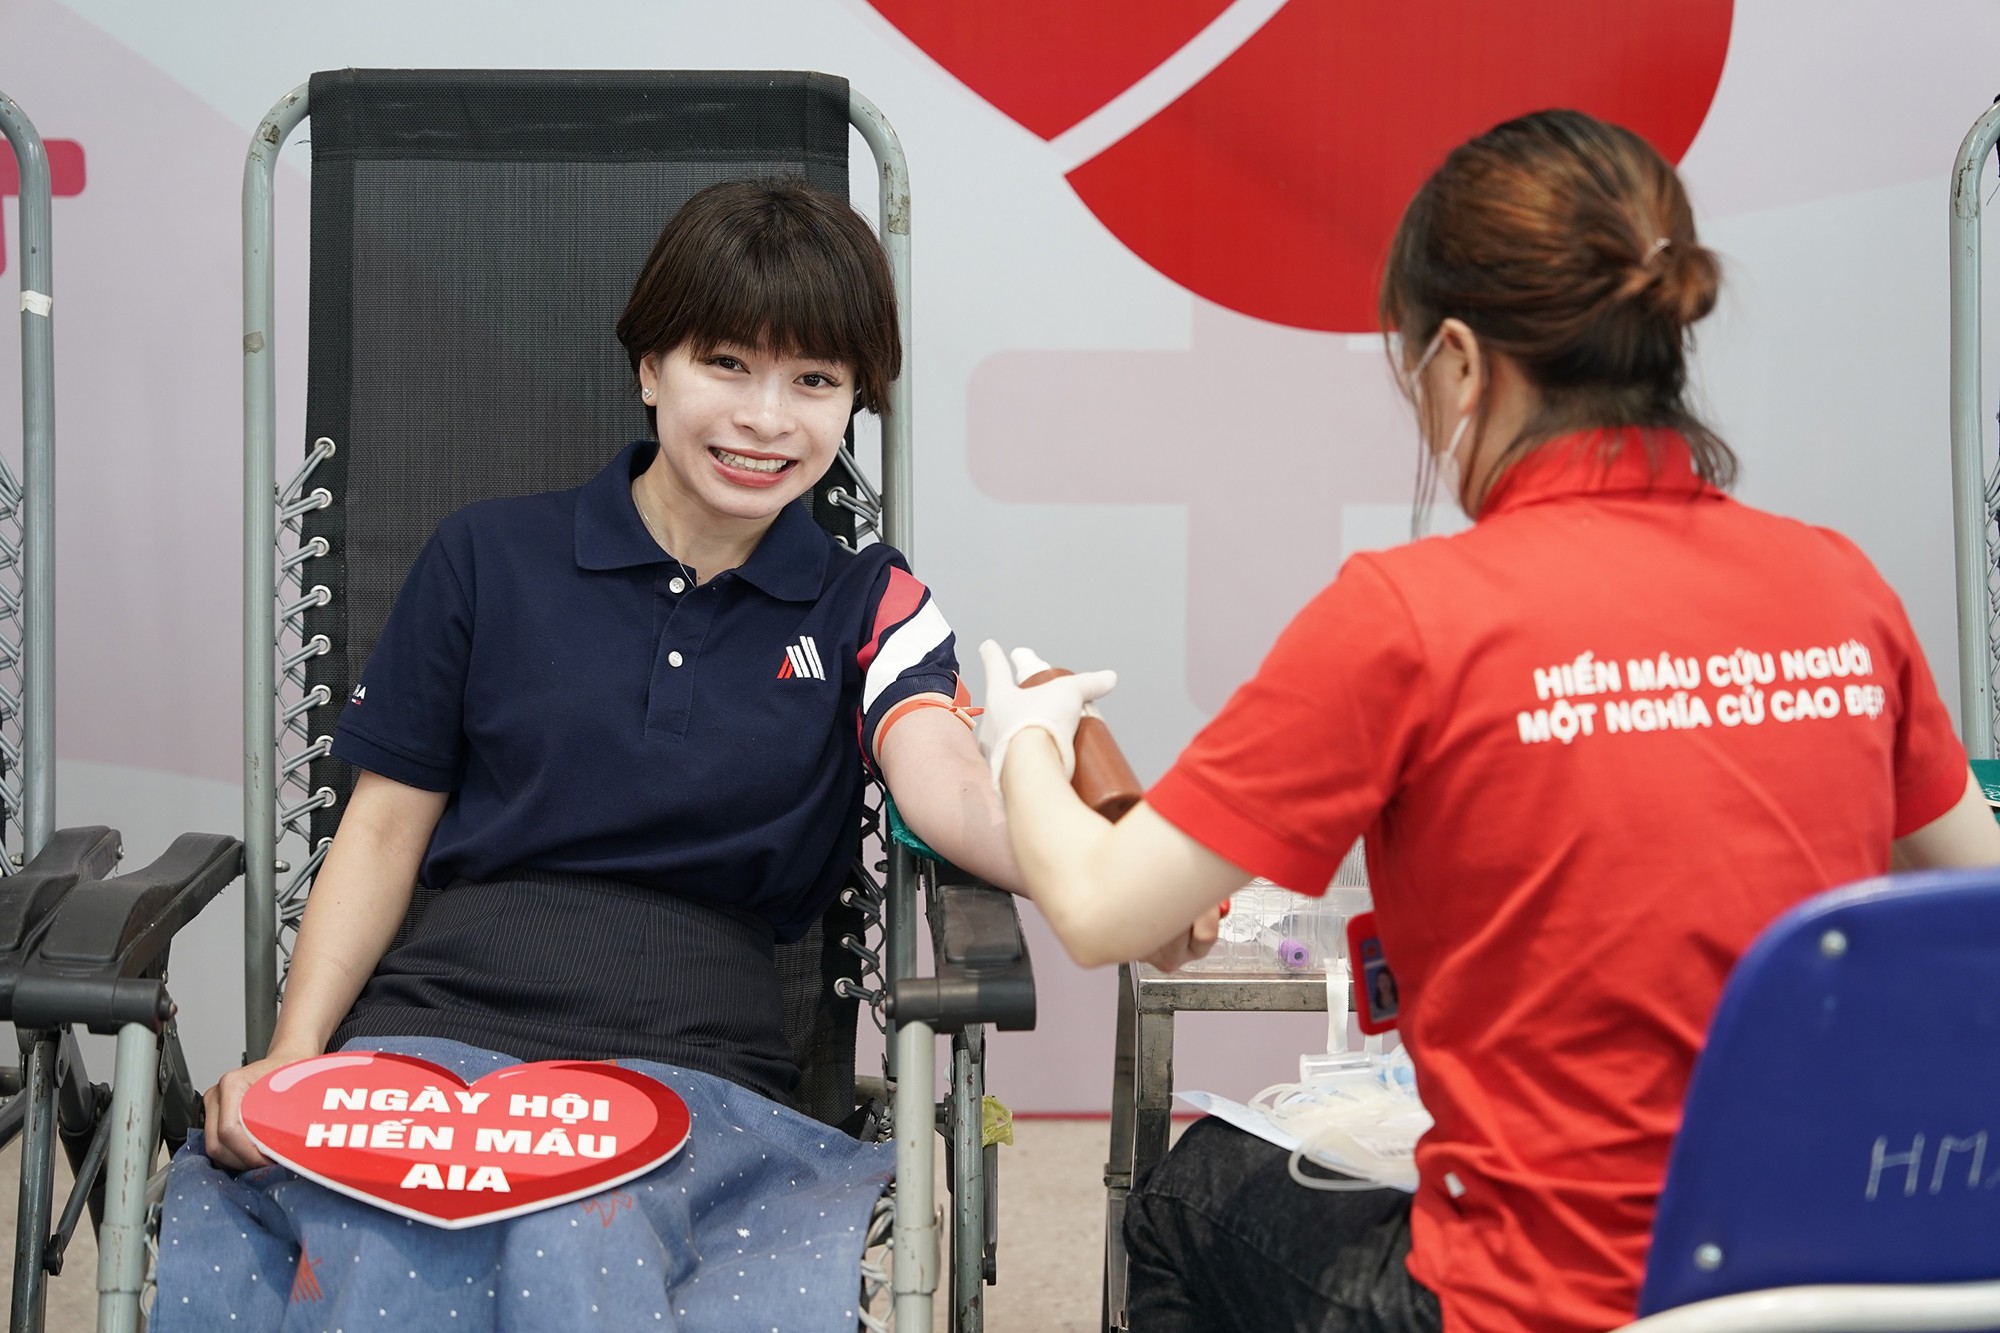 Gần 200 thành viên AIA Việt Nam tham gia hiến máu nhân đạo  - 7